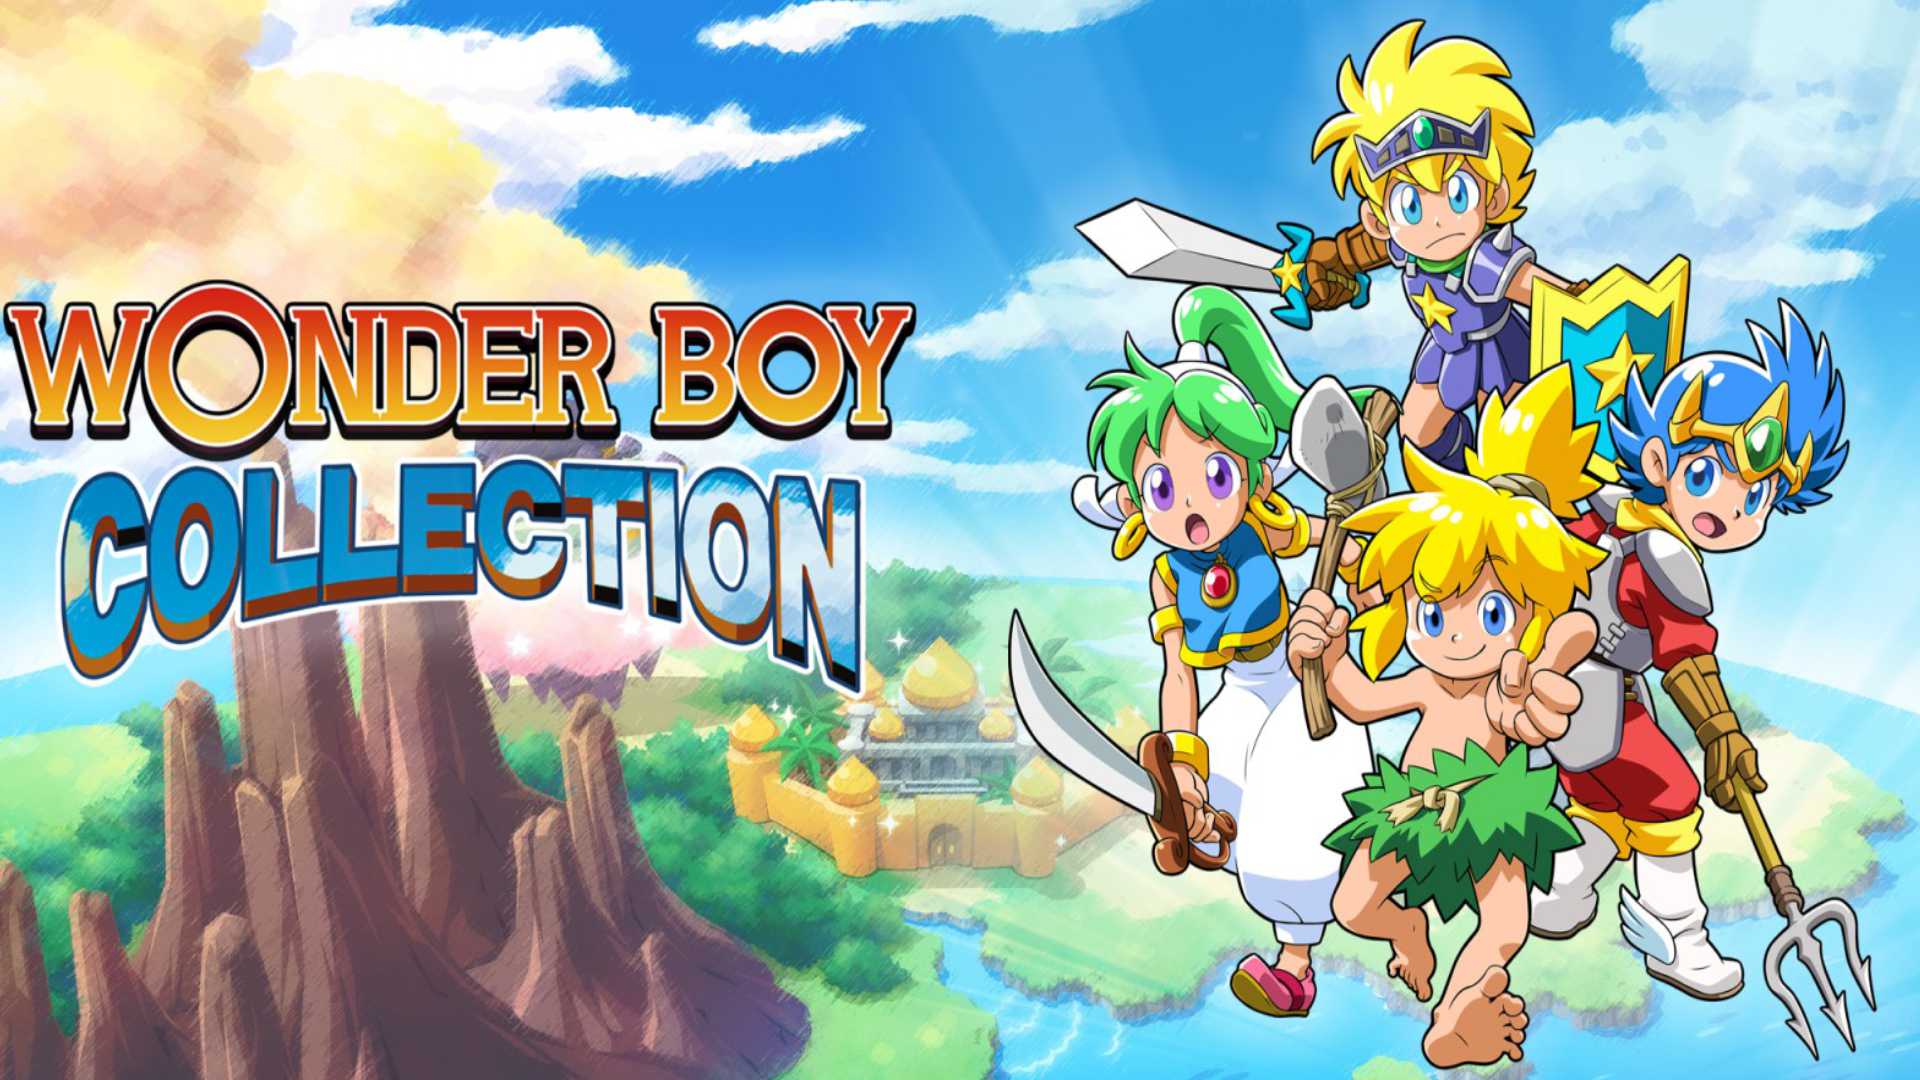 Wonder Boy Collection hat einen Release-Termin